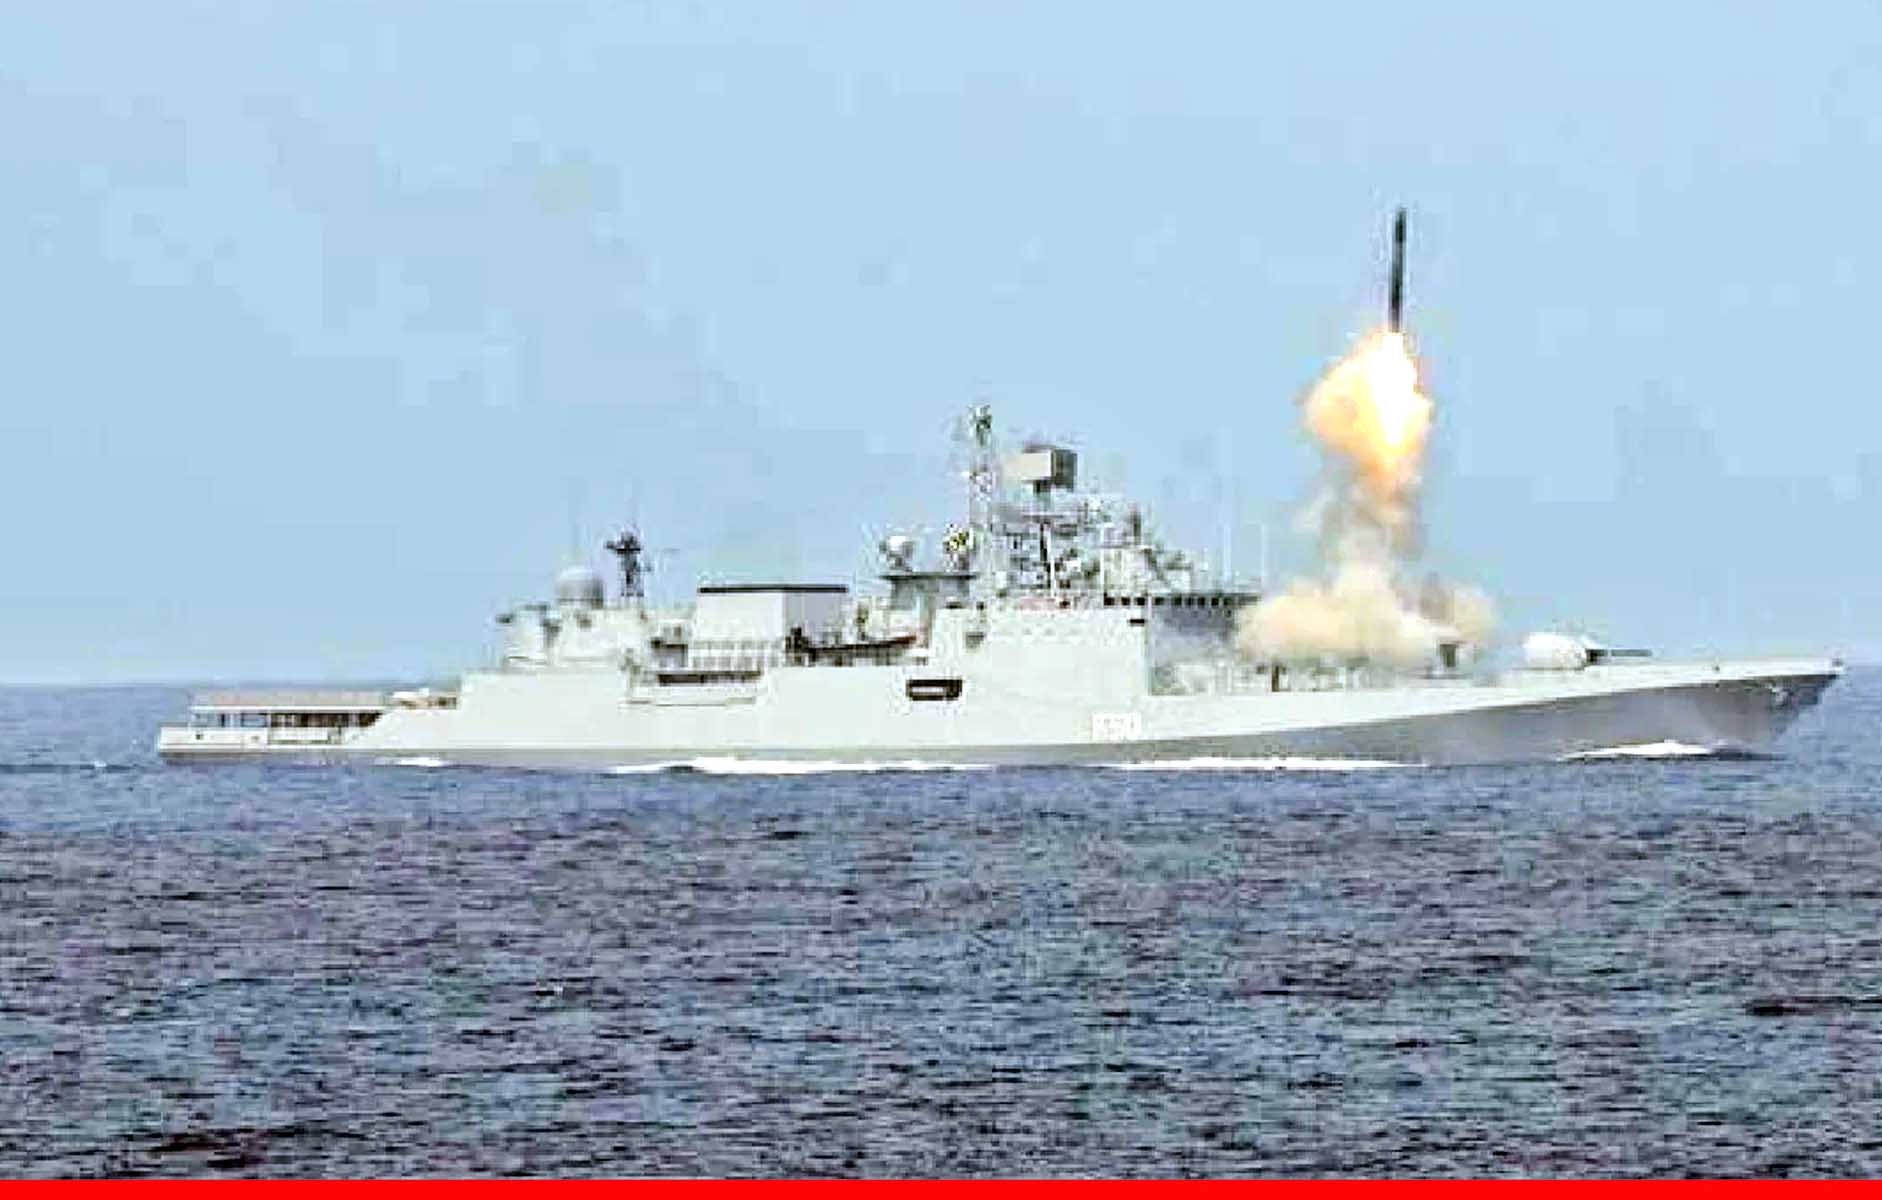 हिंद महासागर में भारतीय वायुसेना और अमेरिकी सेना ने शुरू किया युद्धाभ्यास